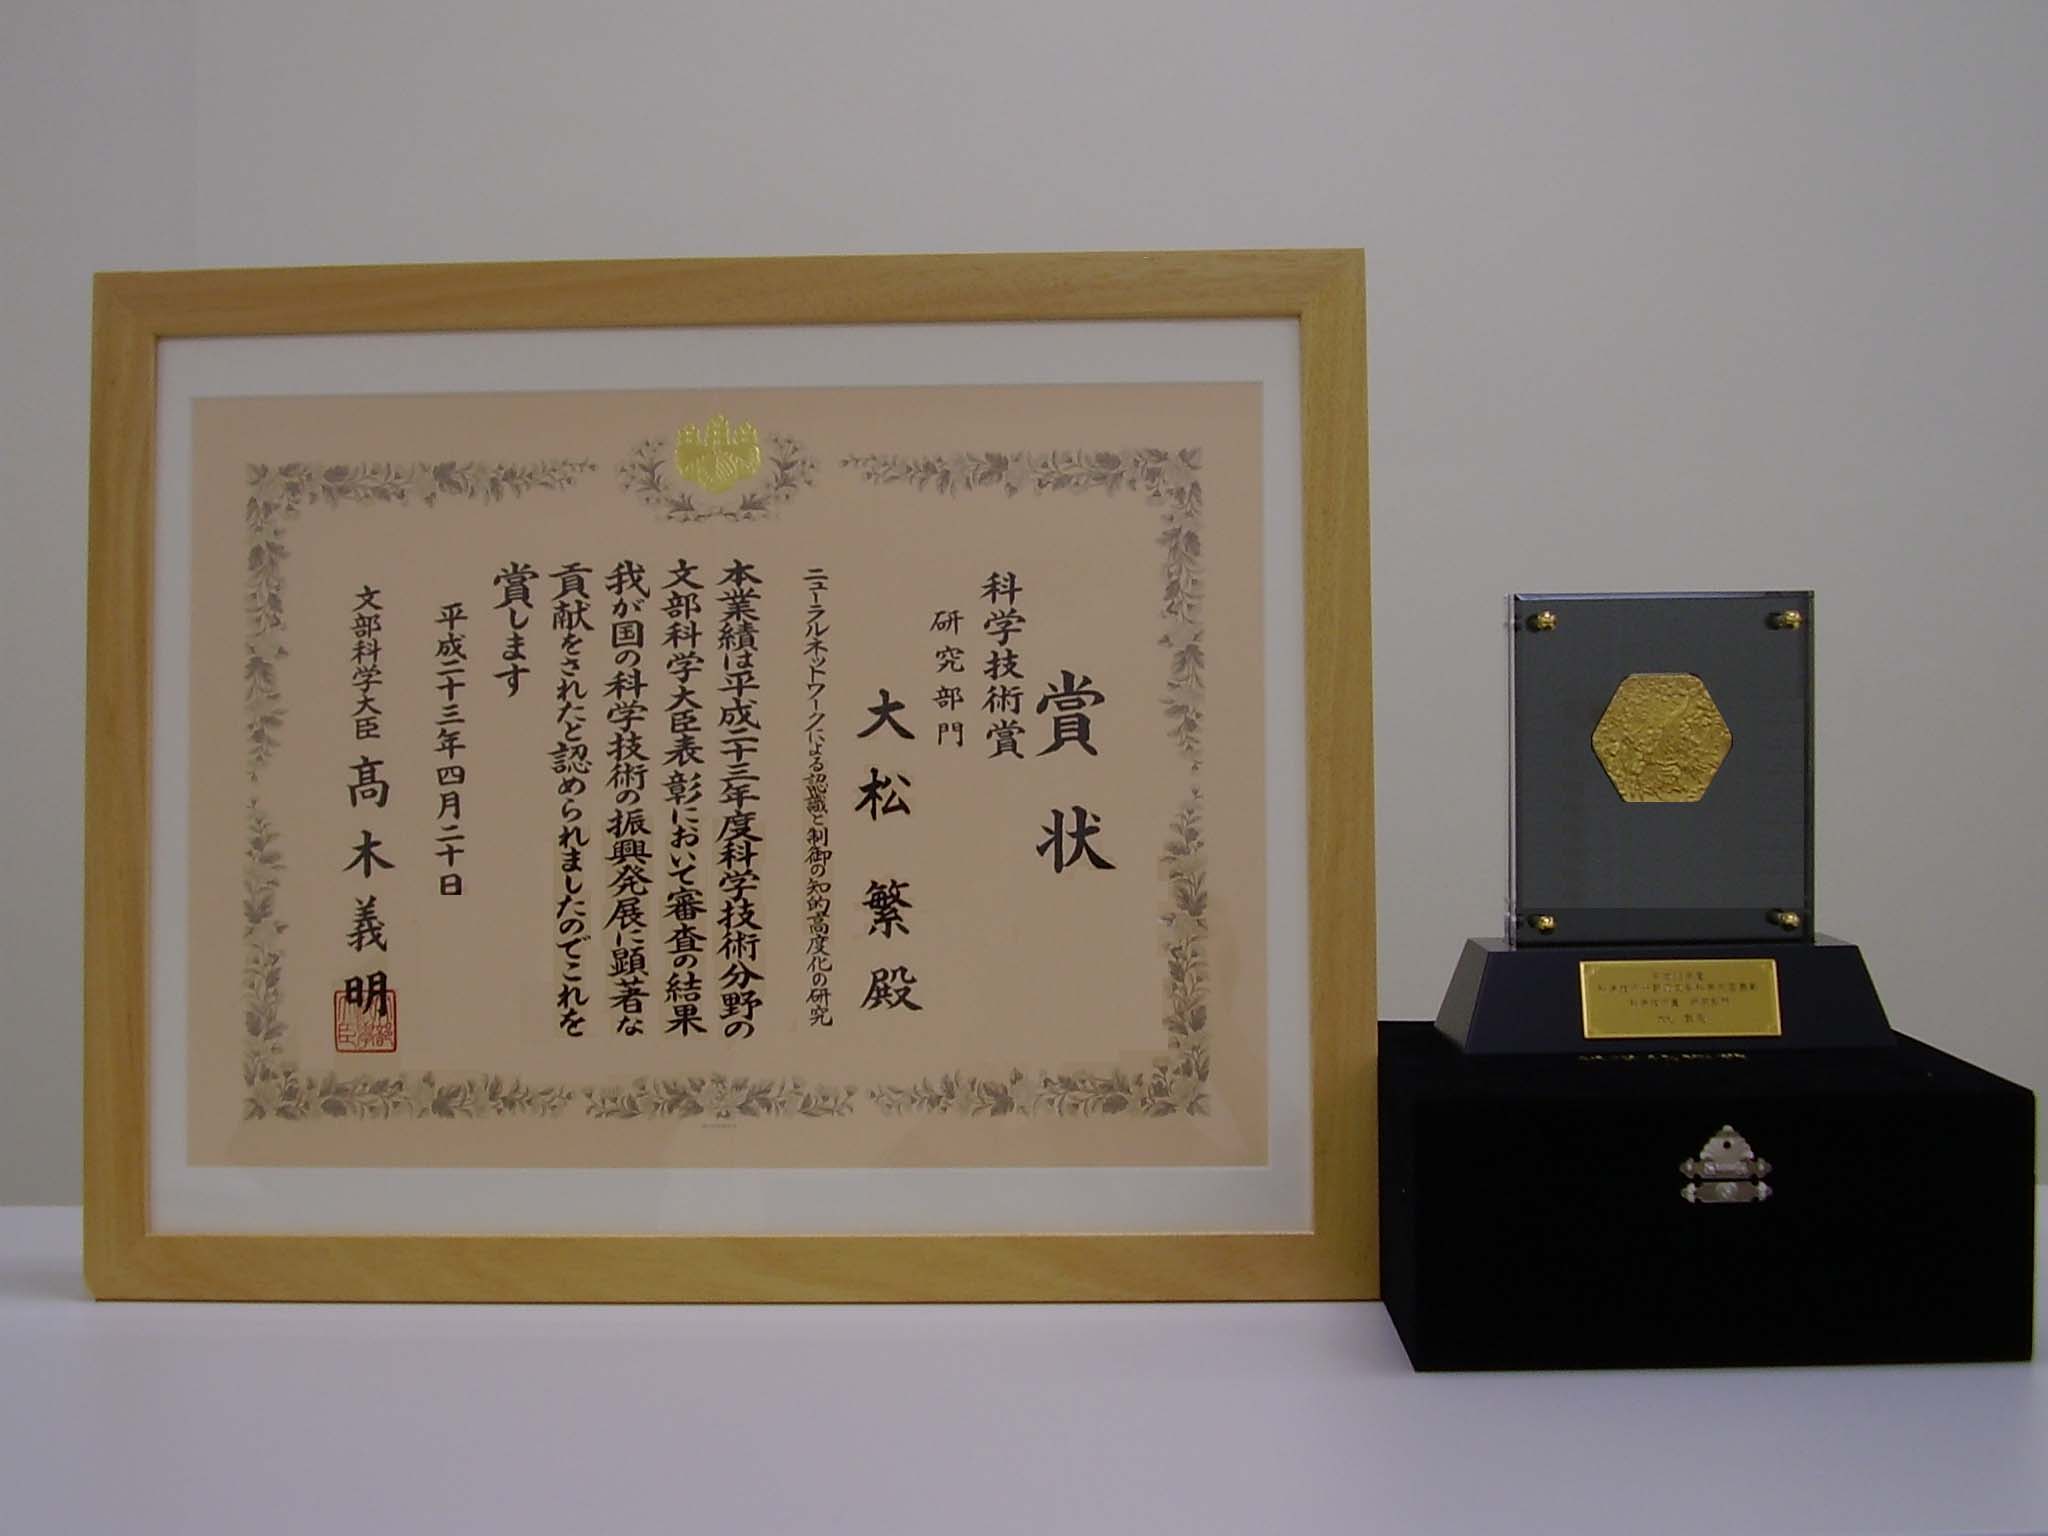 平成23年度文部科学大臣表彰 科学技術賞（研究部門）を受賞